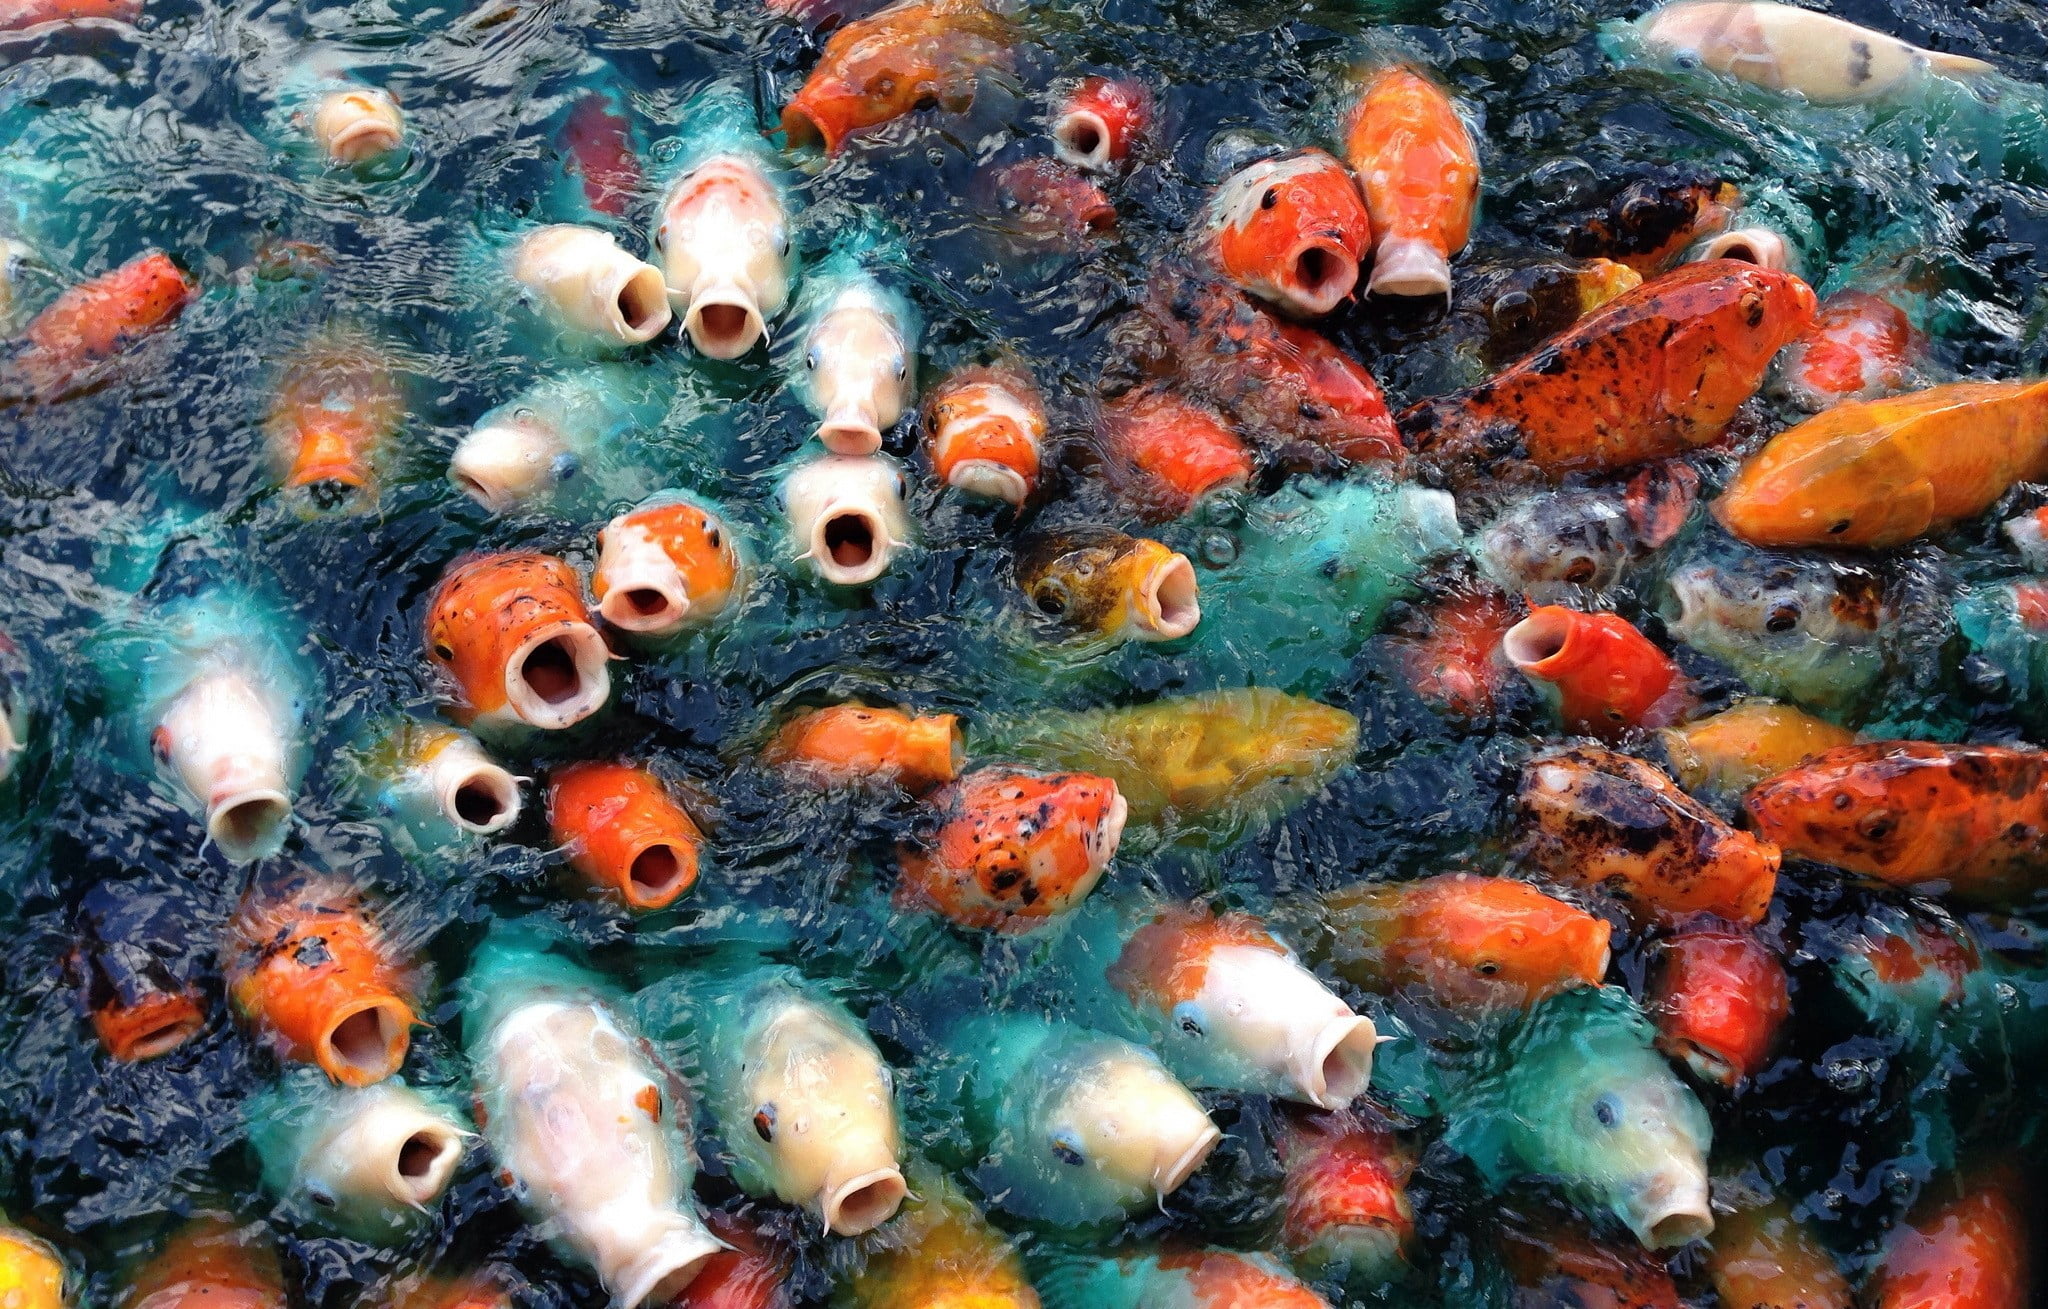 Koi Fish Picture Funny - HD Wallpaper 